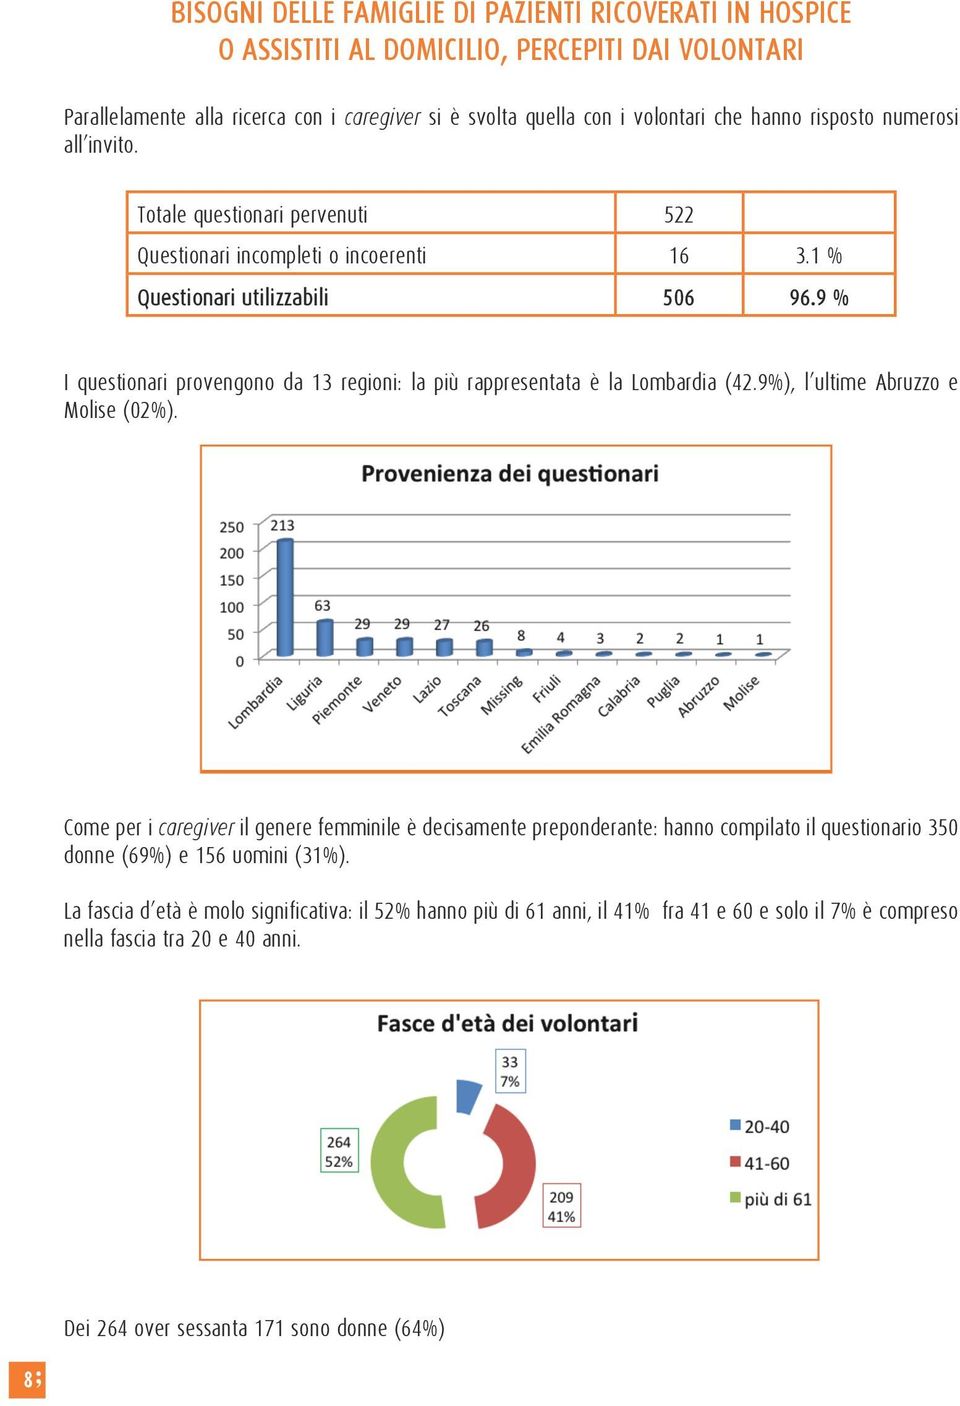 9 % I questionari provengono da 13 regioni: la più rappresentata è la Lombardia (42.9%), l ultime Abruzzo e Molise (02%).